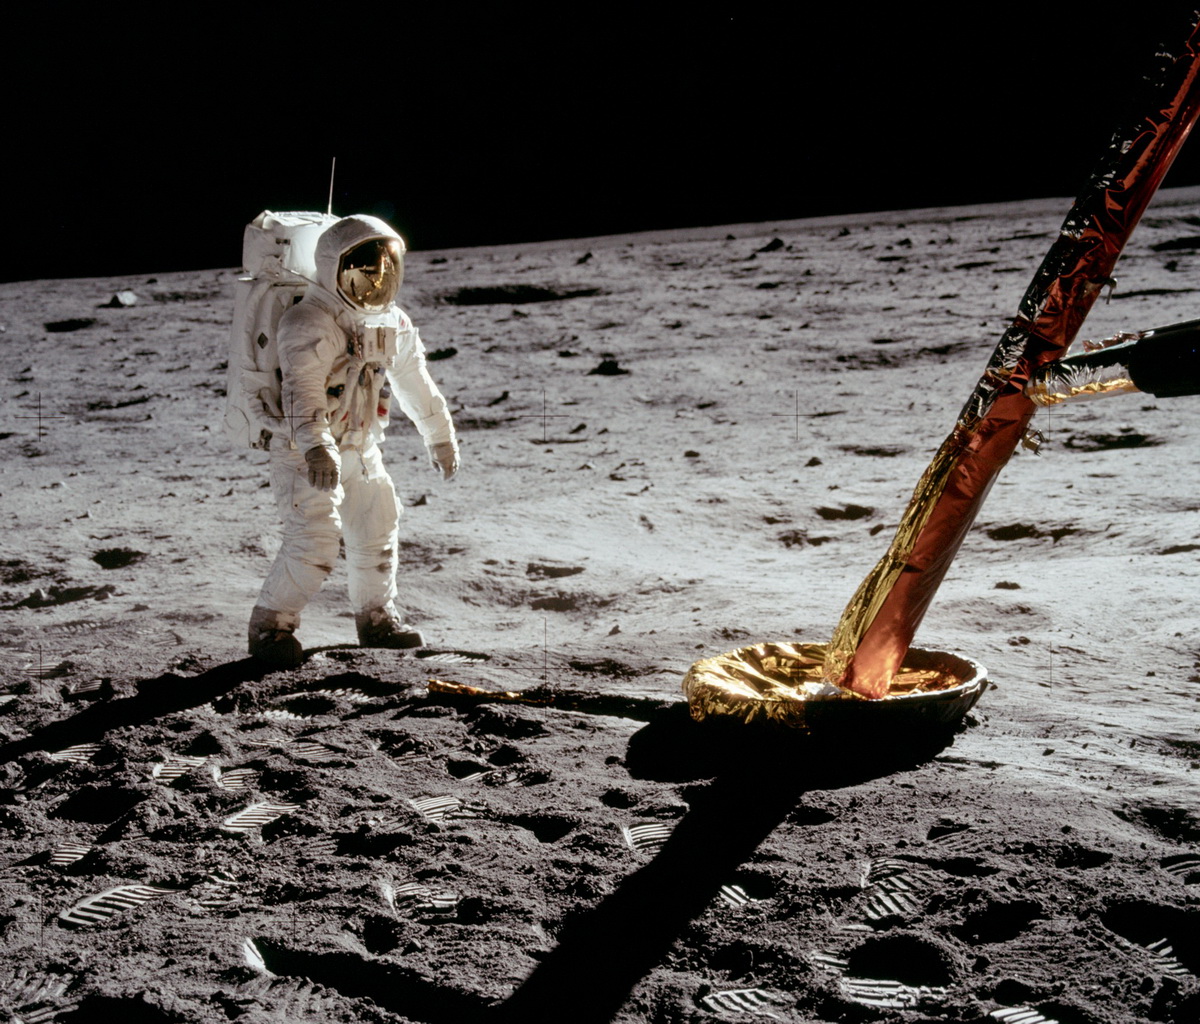 Олдрин возле опоры лунного модуля